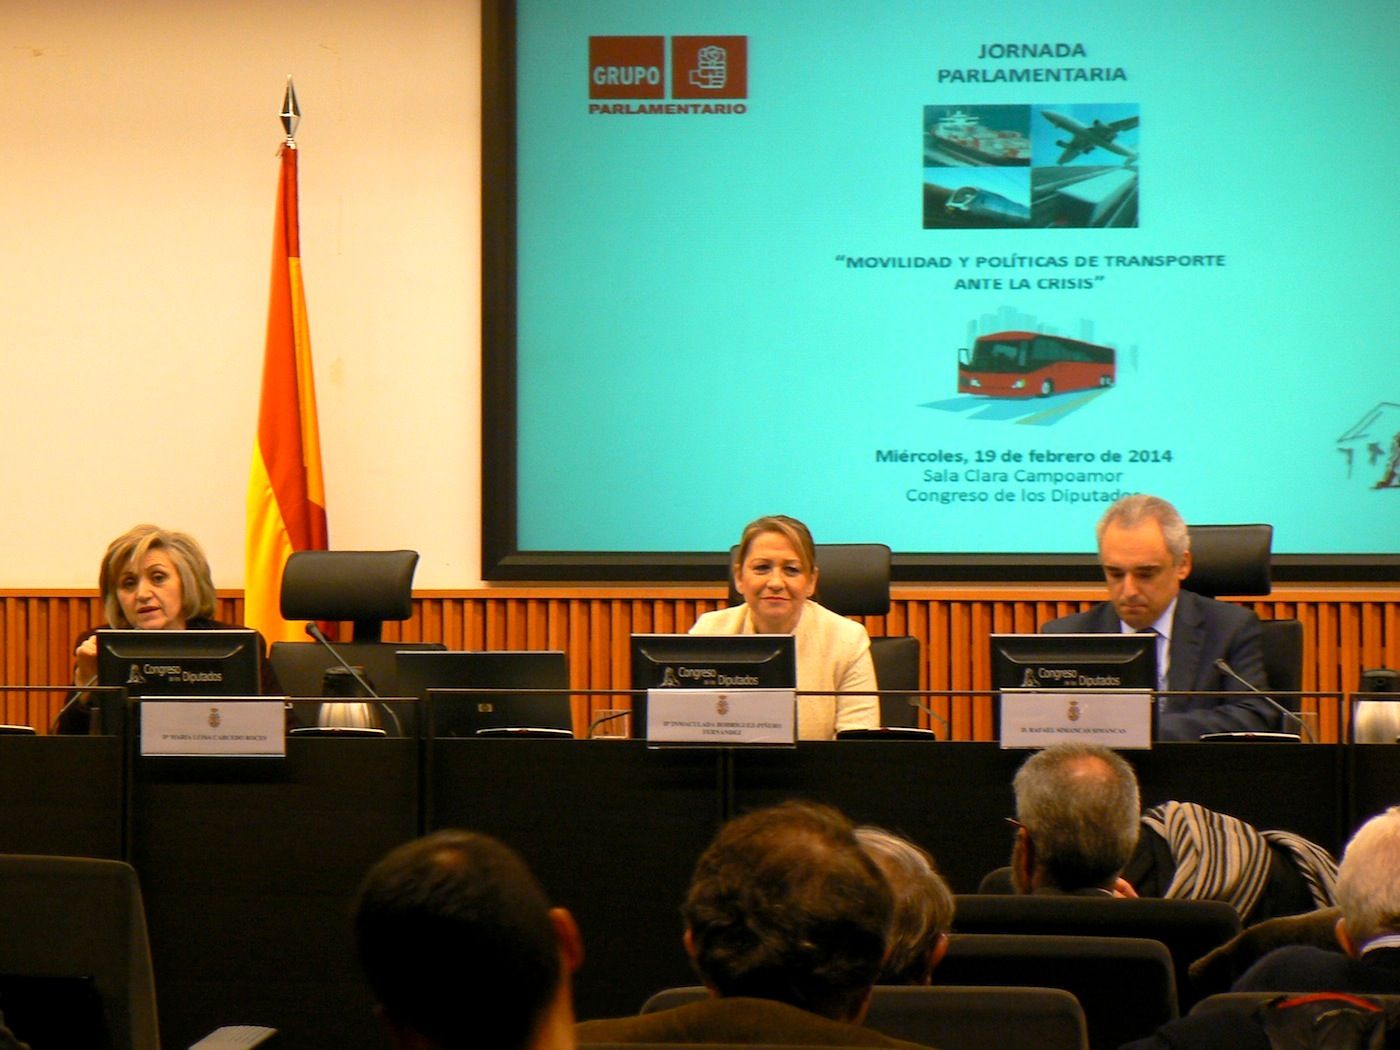 PSOE Jornada parlamentaria de movilidad y transporte 19 de febrero 2014